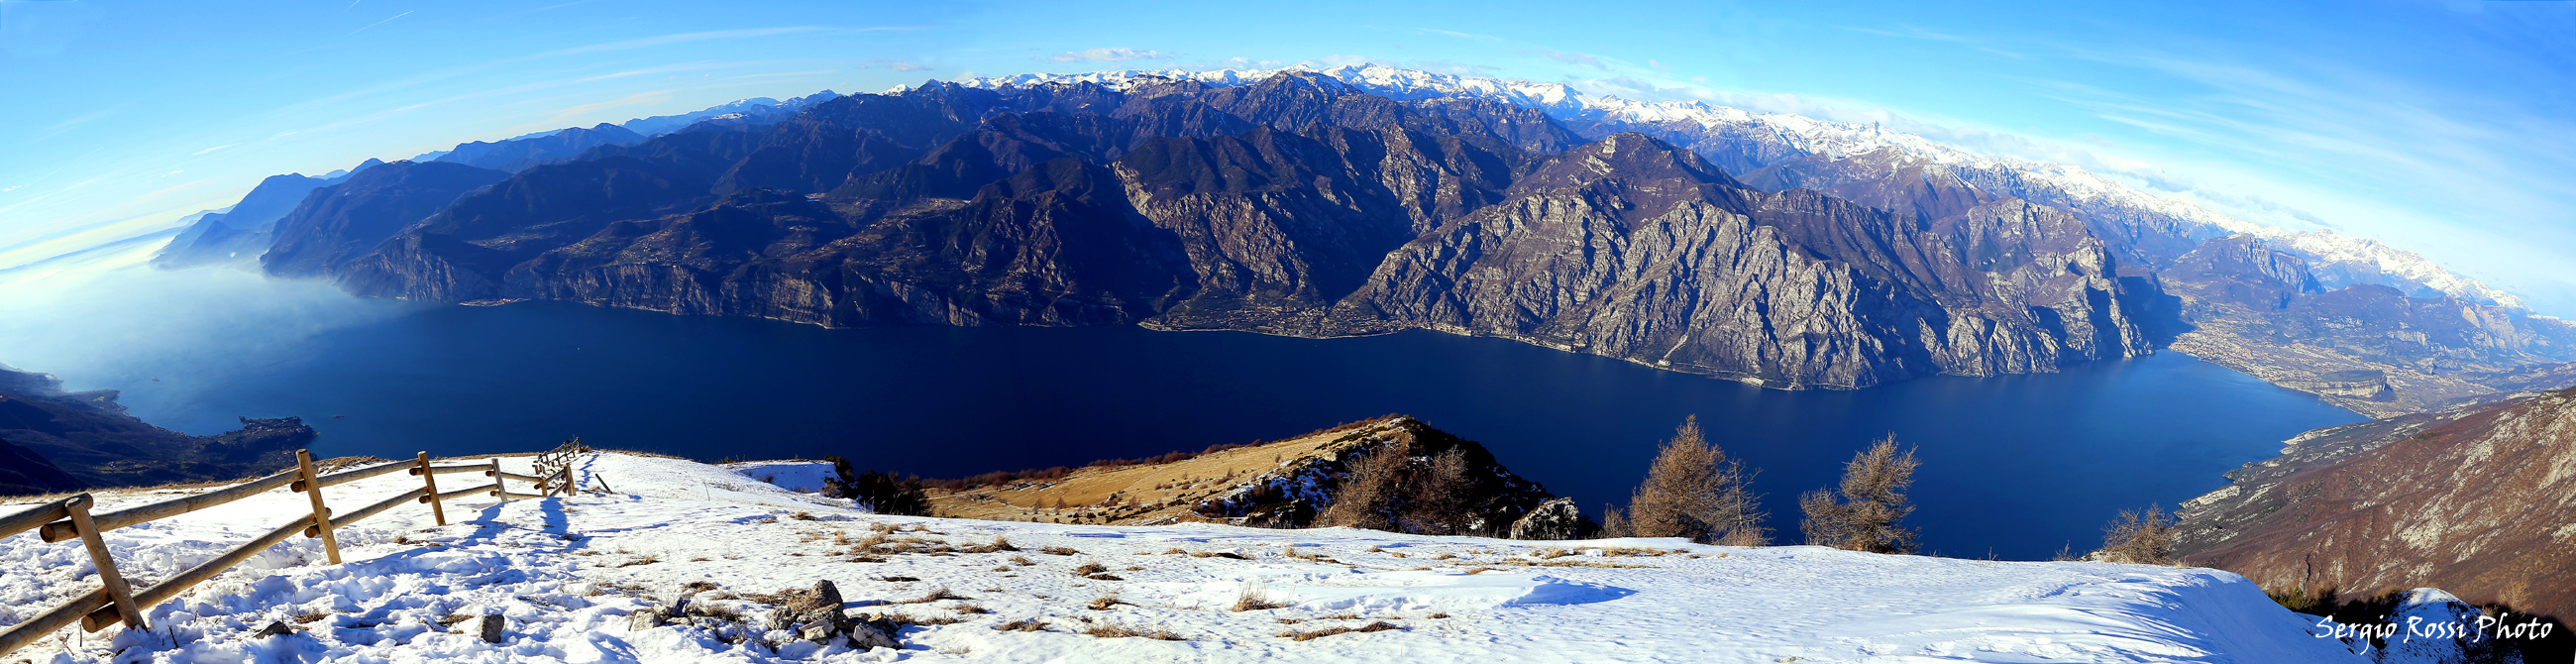 Panoramica lago di Garda vista dal monte Baldo...